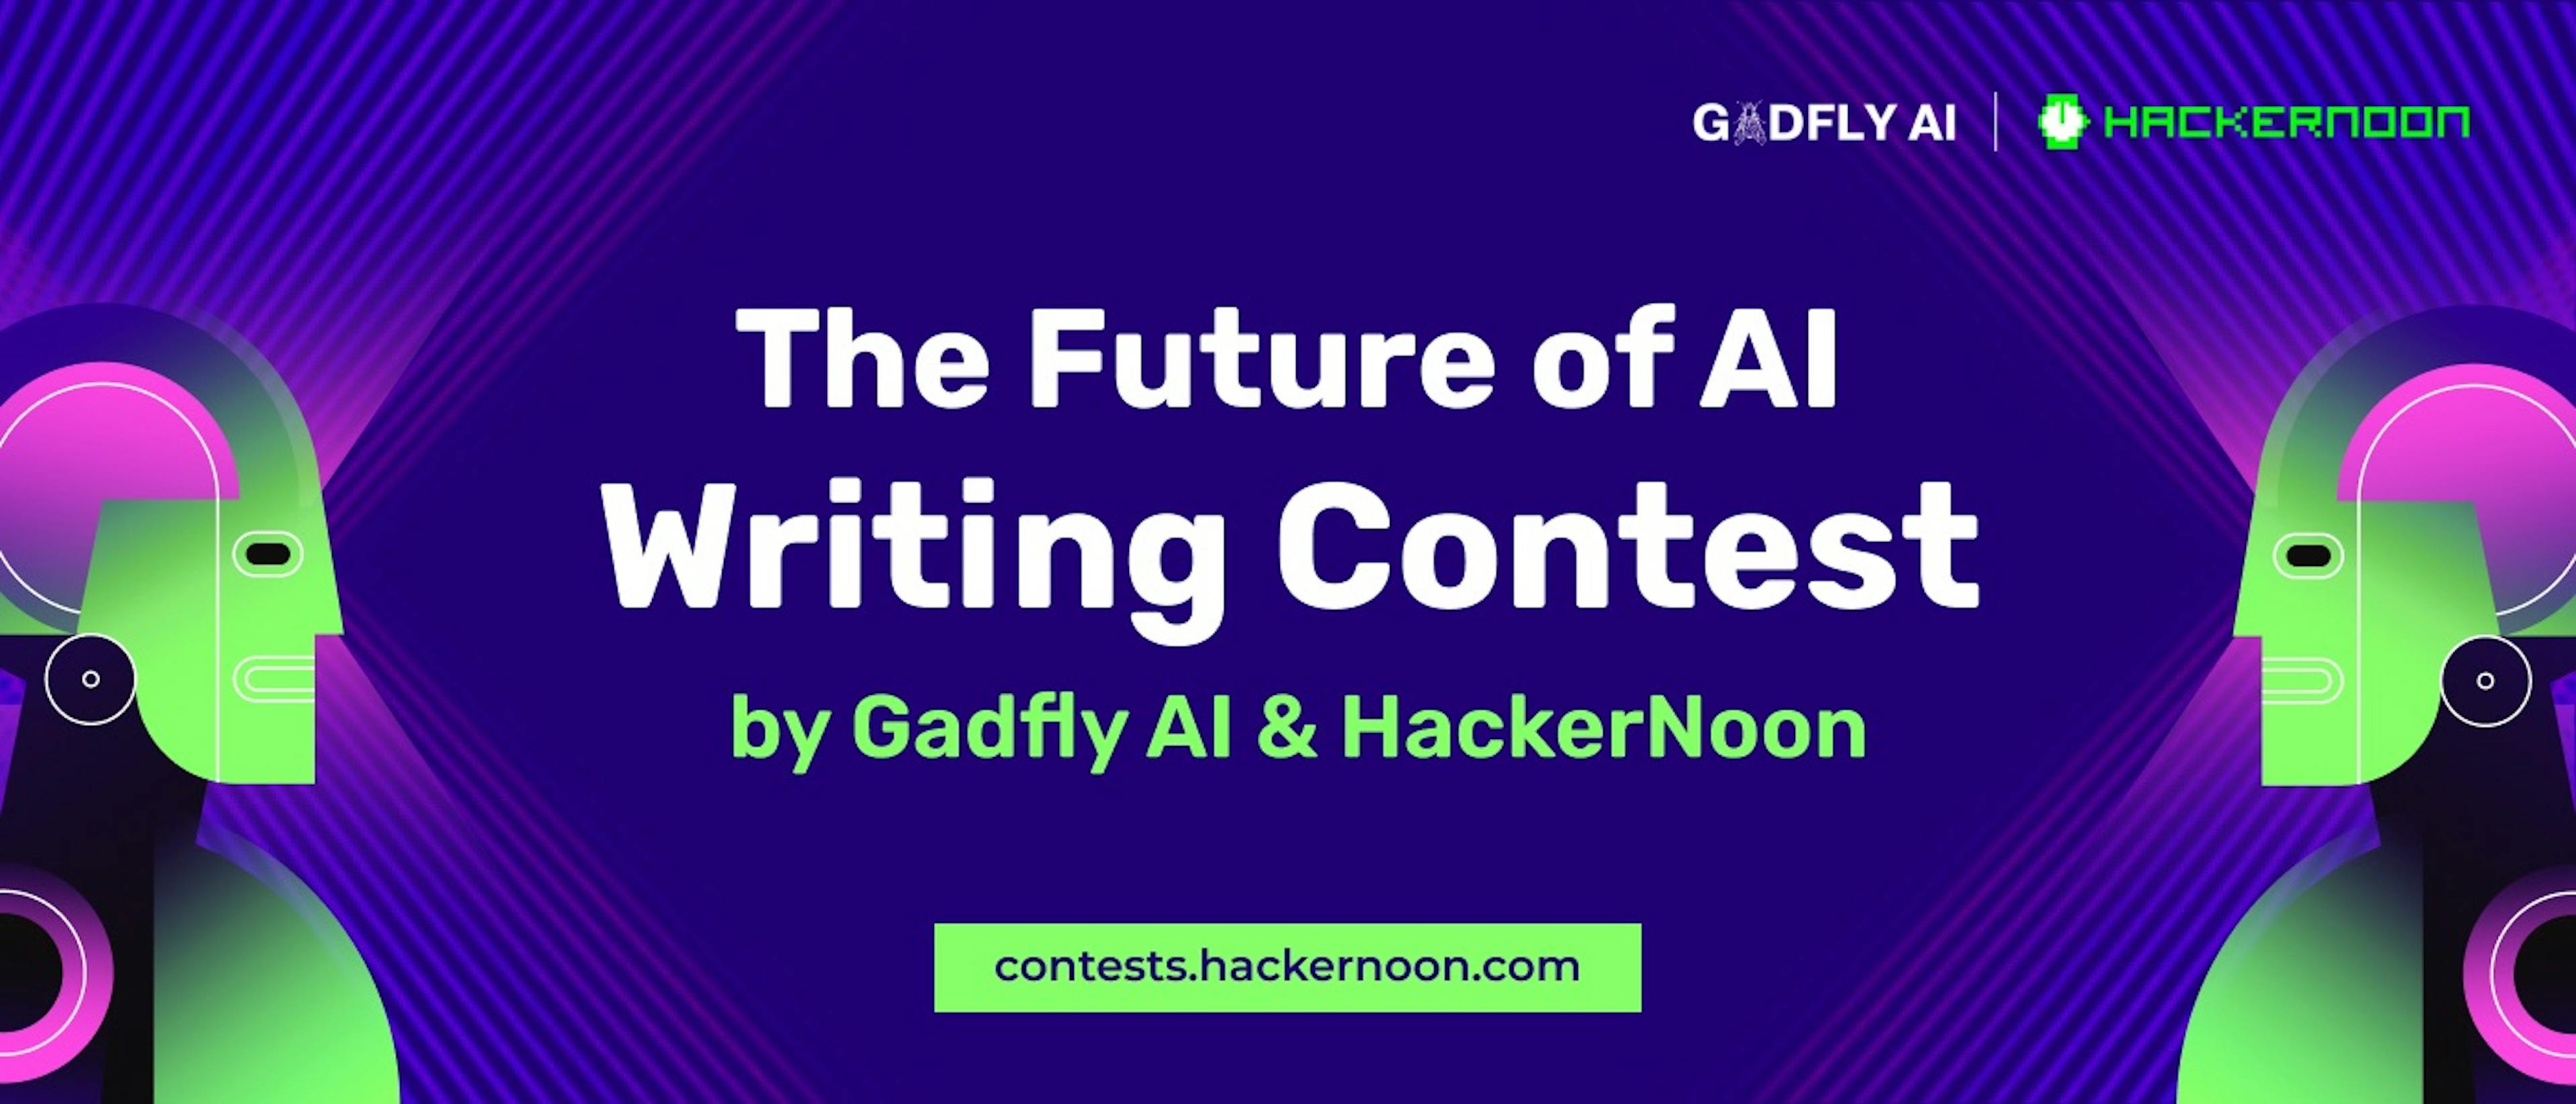 featured image - Concours d'écriture sur l'avenir de l'IA par GadflyAI : le gagnant est annoncé !